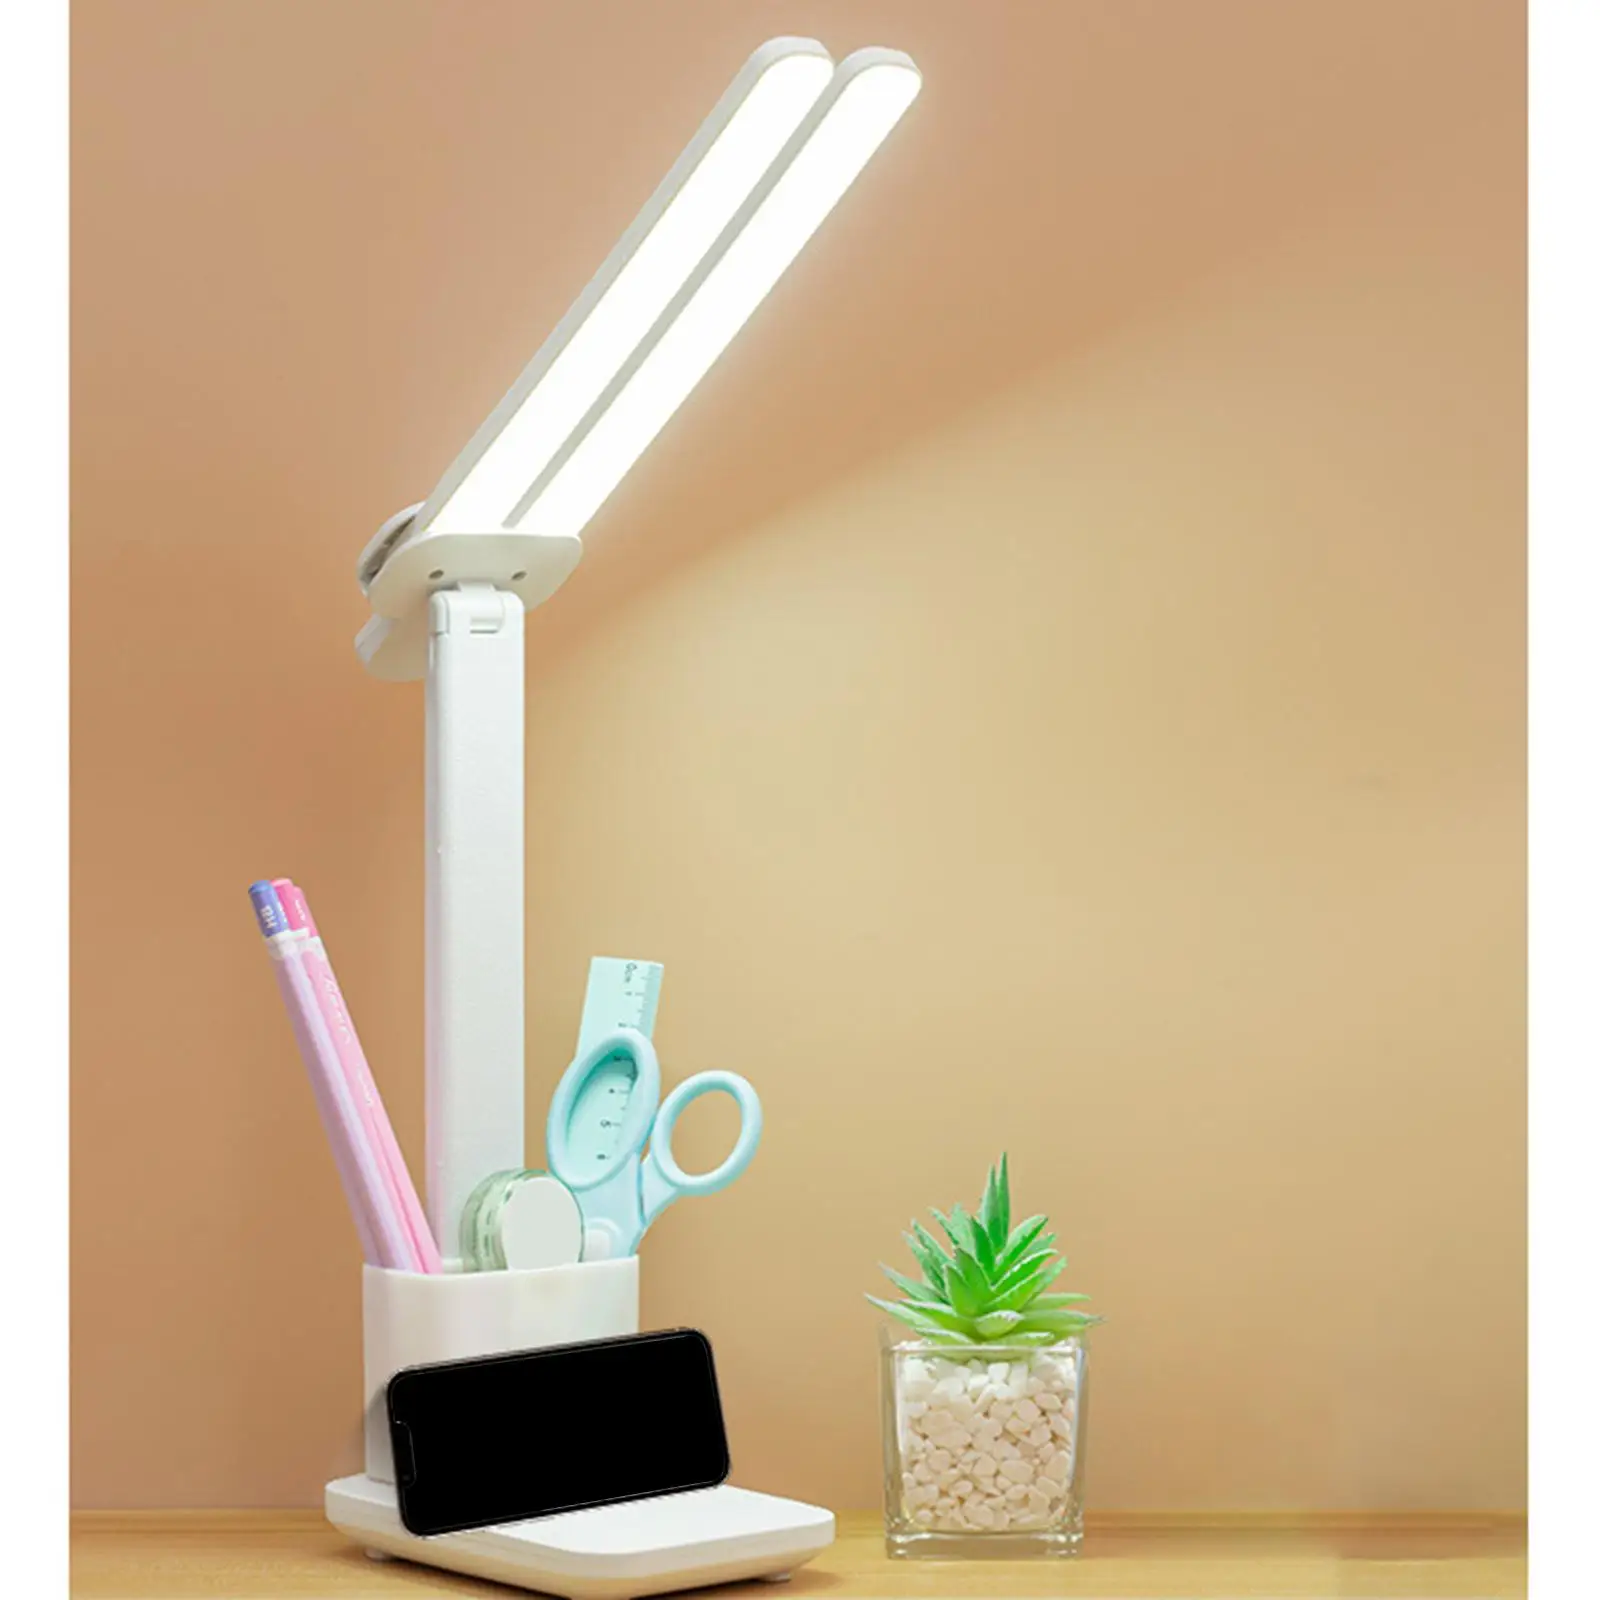 LED Desk Light with Pen Holder Phone Holder Double for Office NightStand